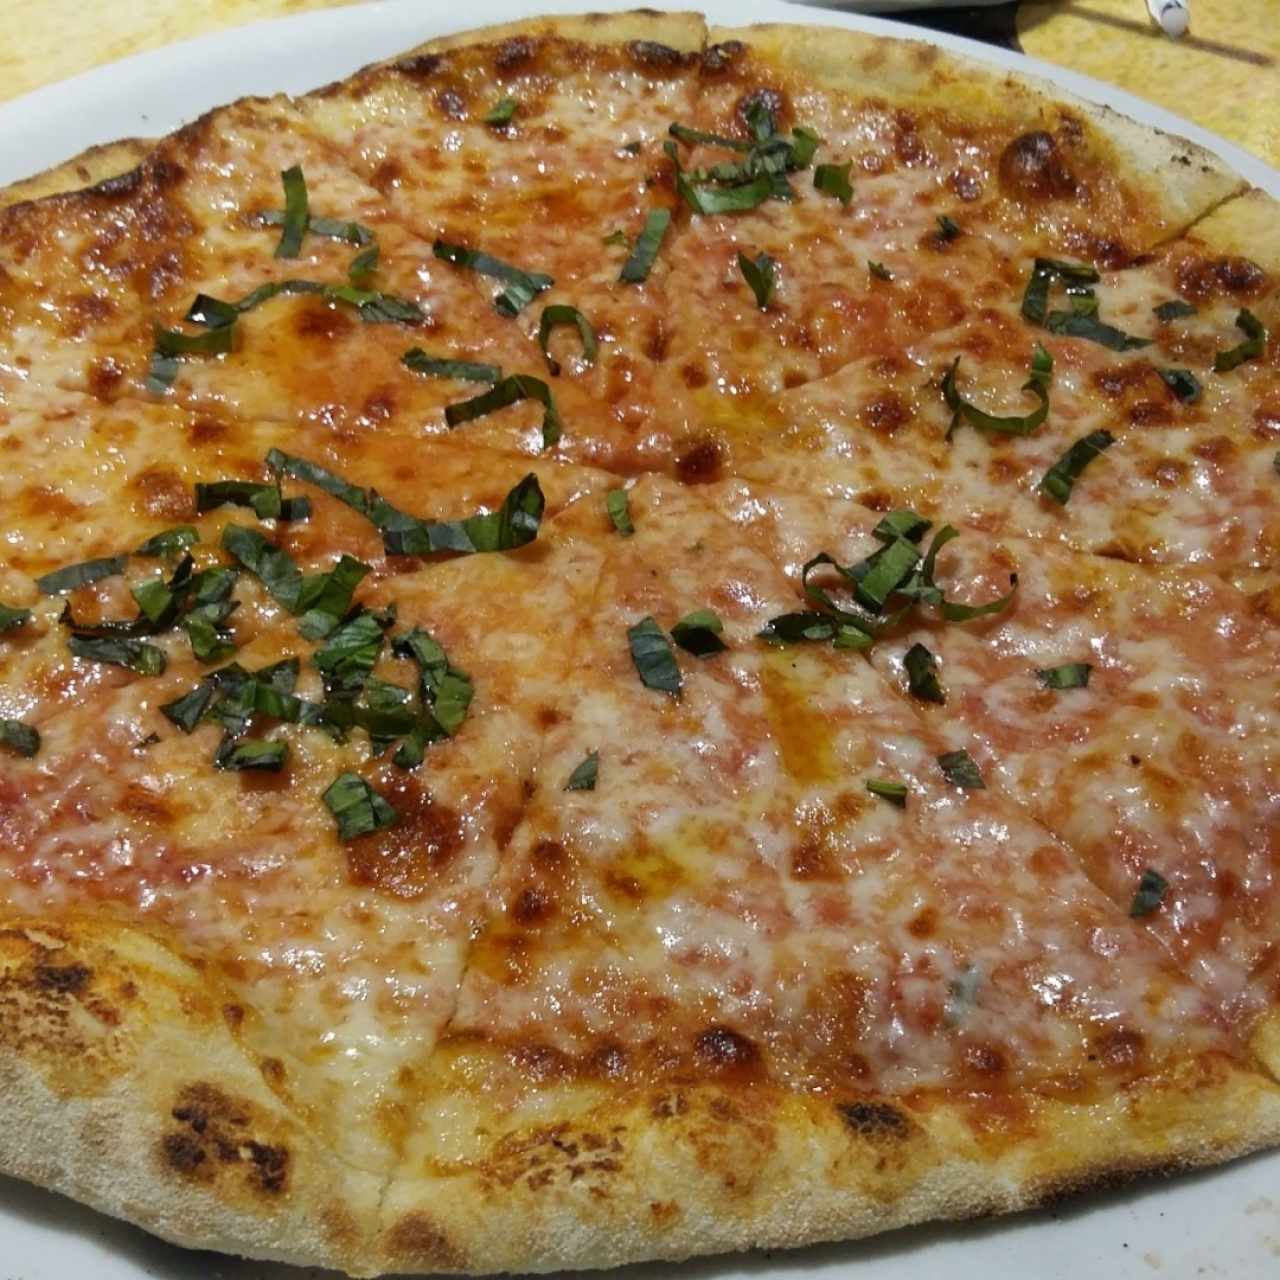 LA PIZZA - Margherita